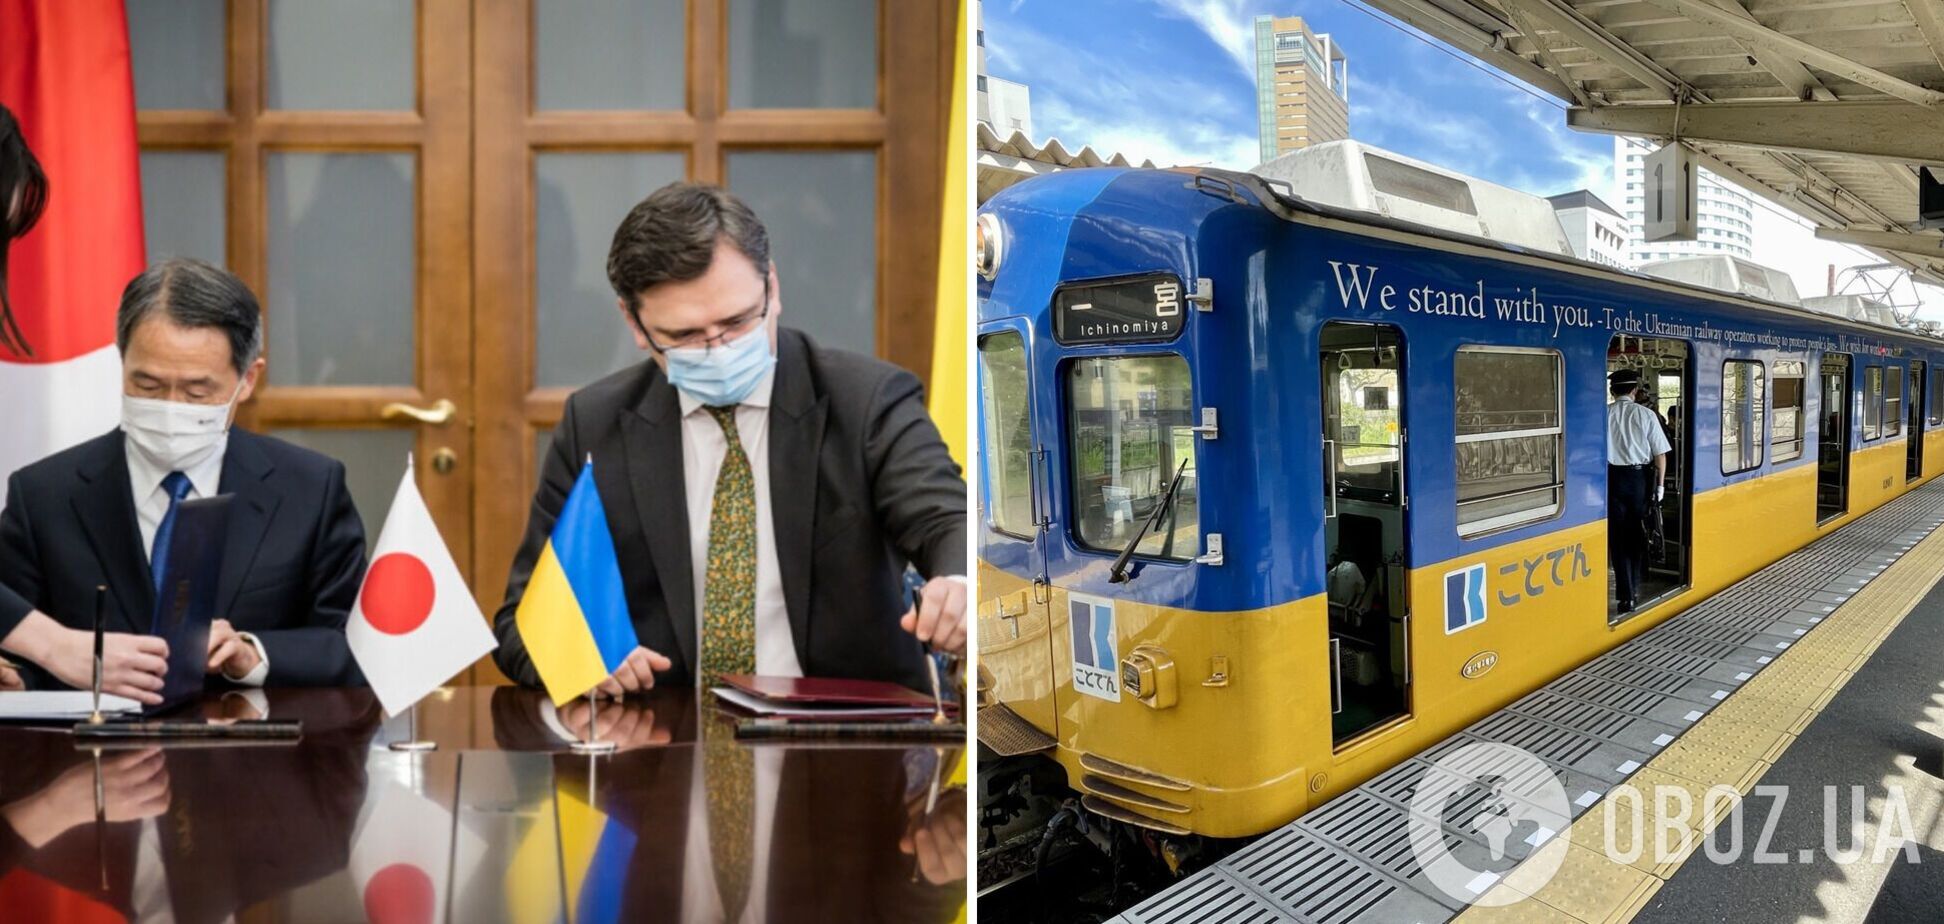 'We stand with you': в Японии поддержали Украину, запустив поезд в цветах украинского флага. Фото